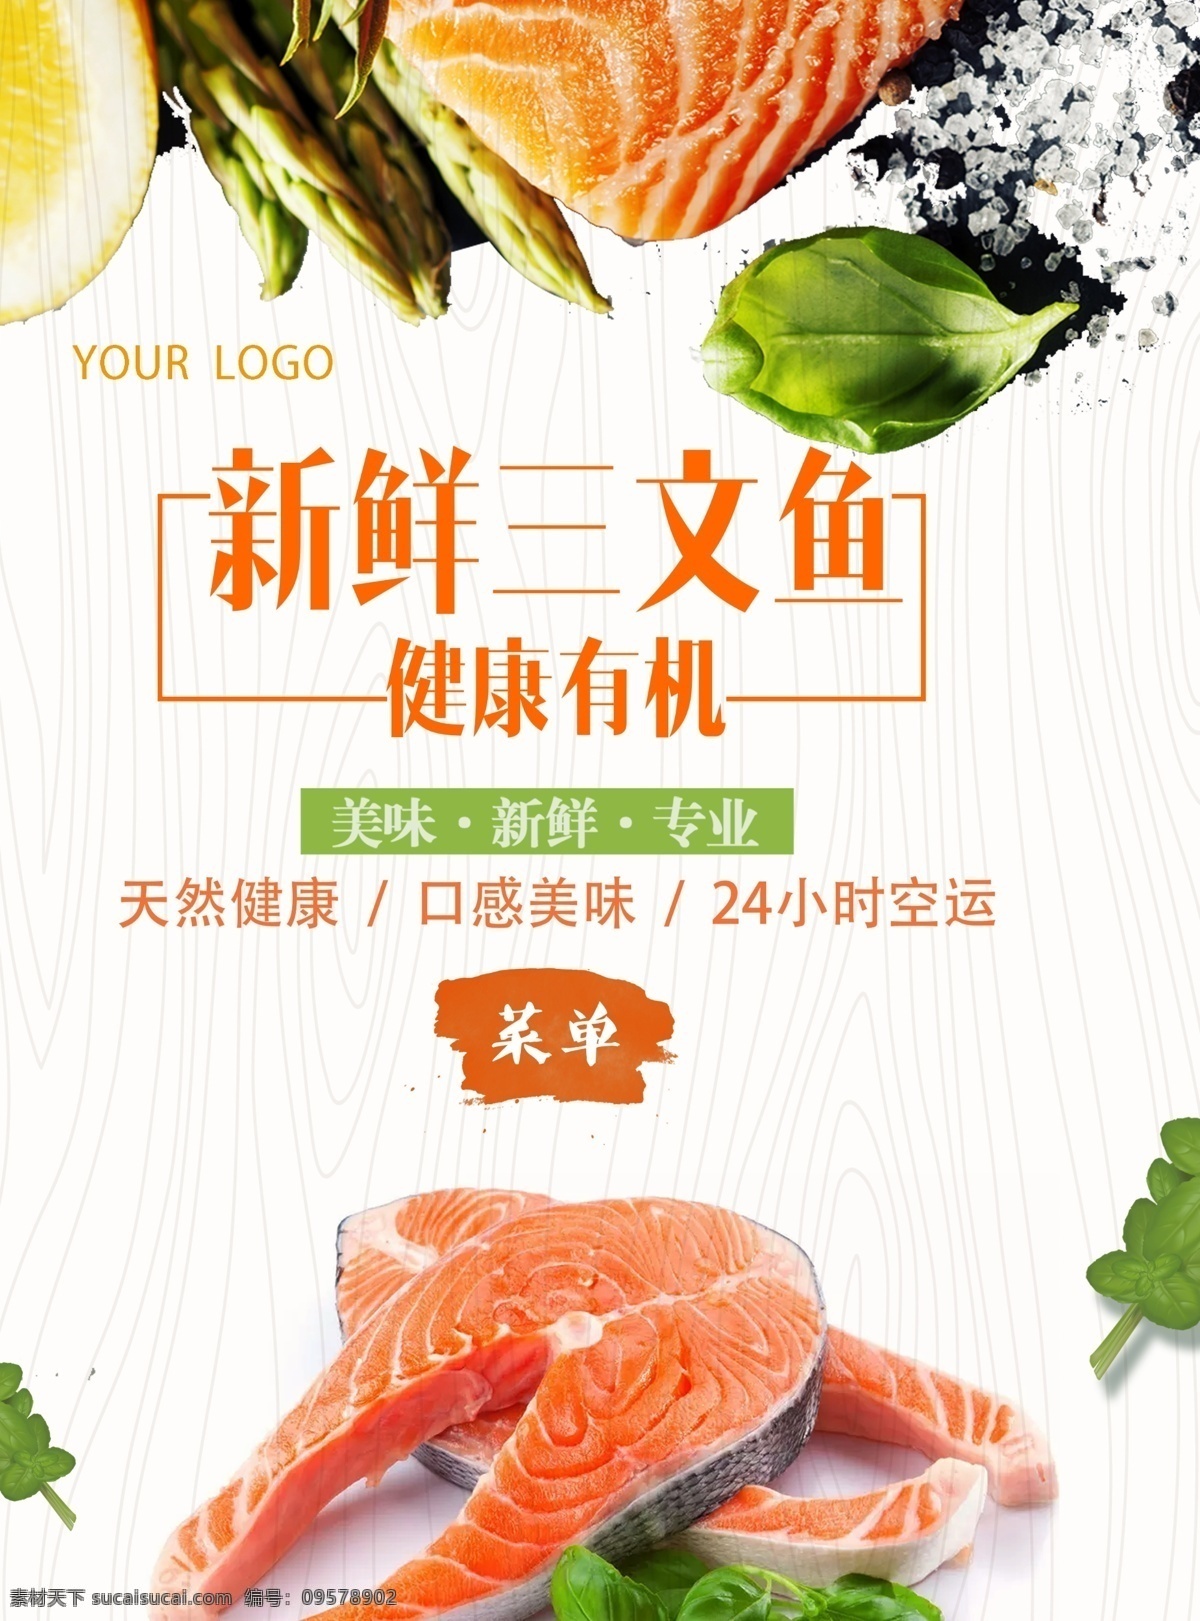 日式 餐厅 宣传单 料理 新鲜 三文鱼 日料 日式餐厅菜单 日料菜单 菜单 菜单设计 宣传 宣传单设计